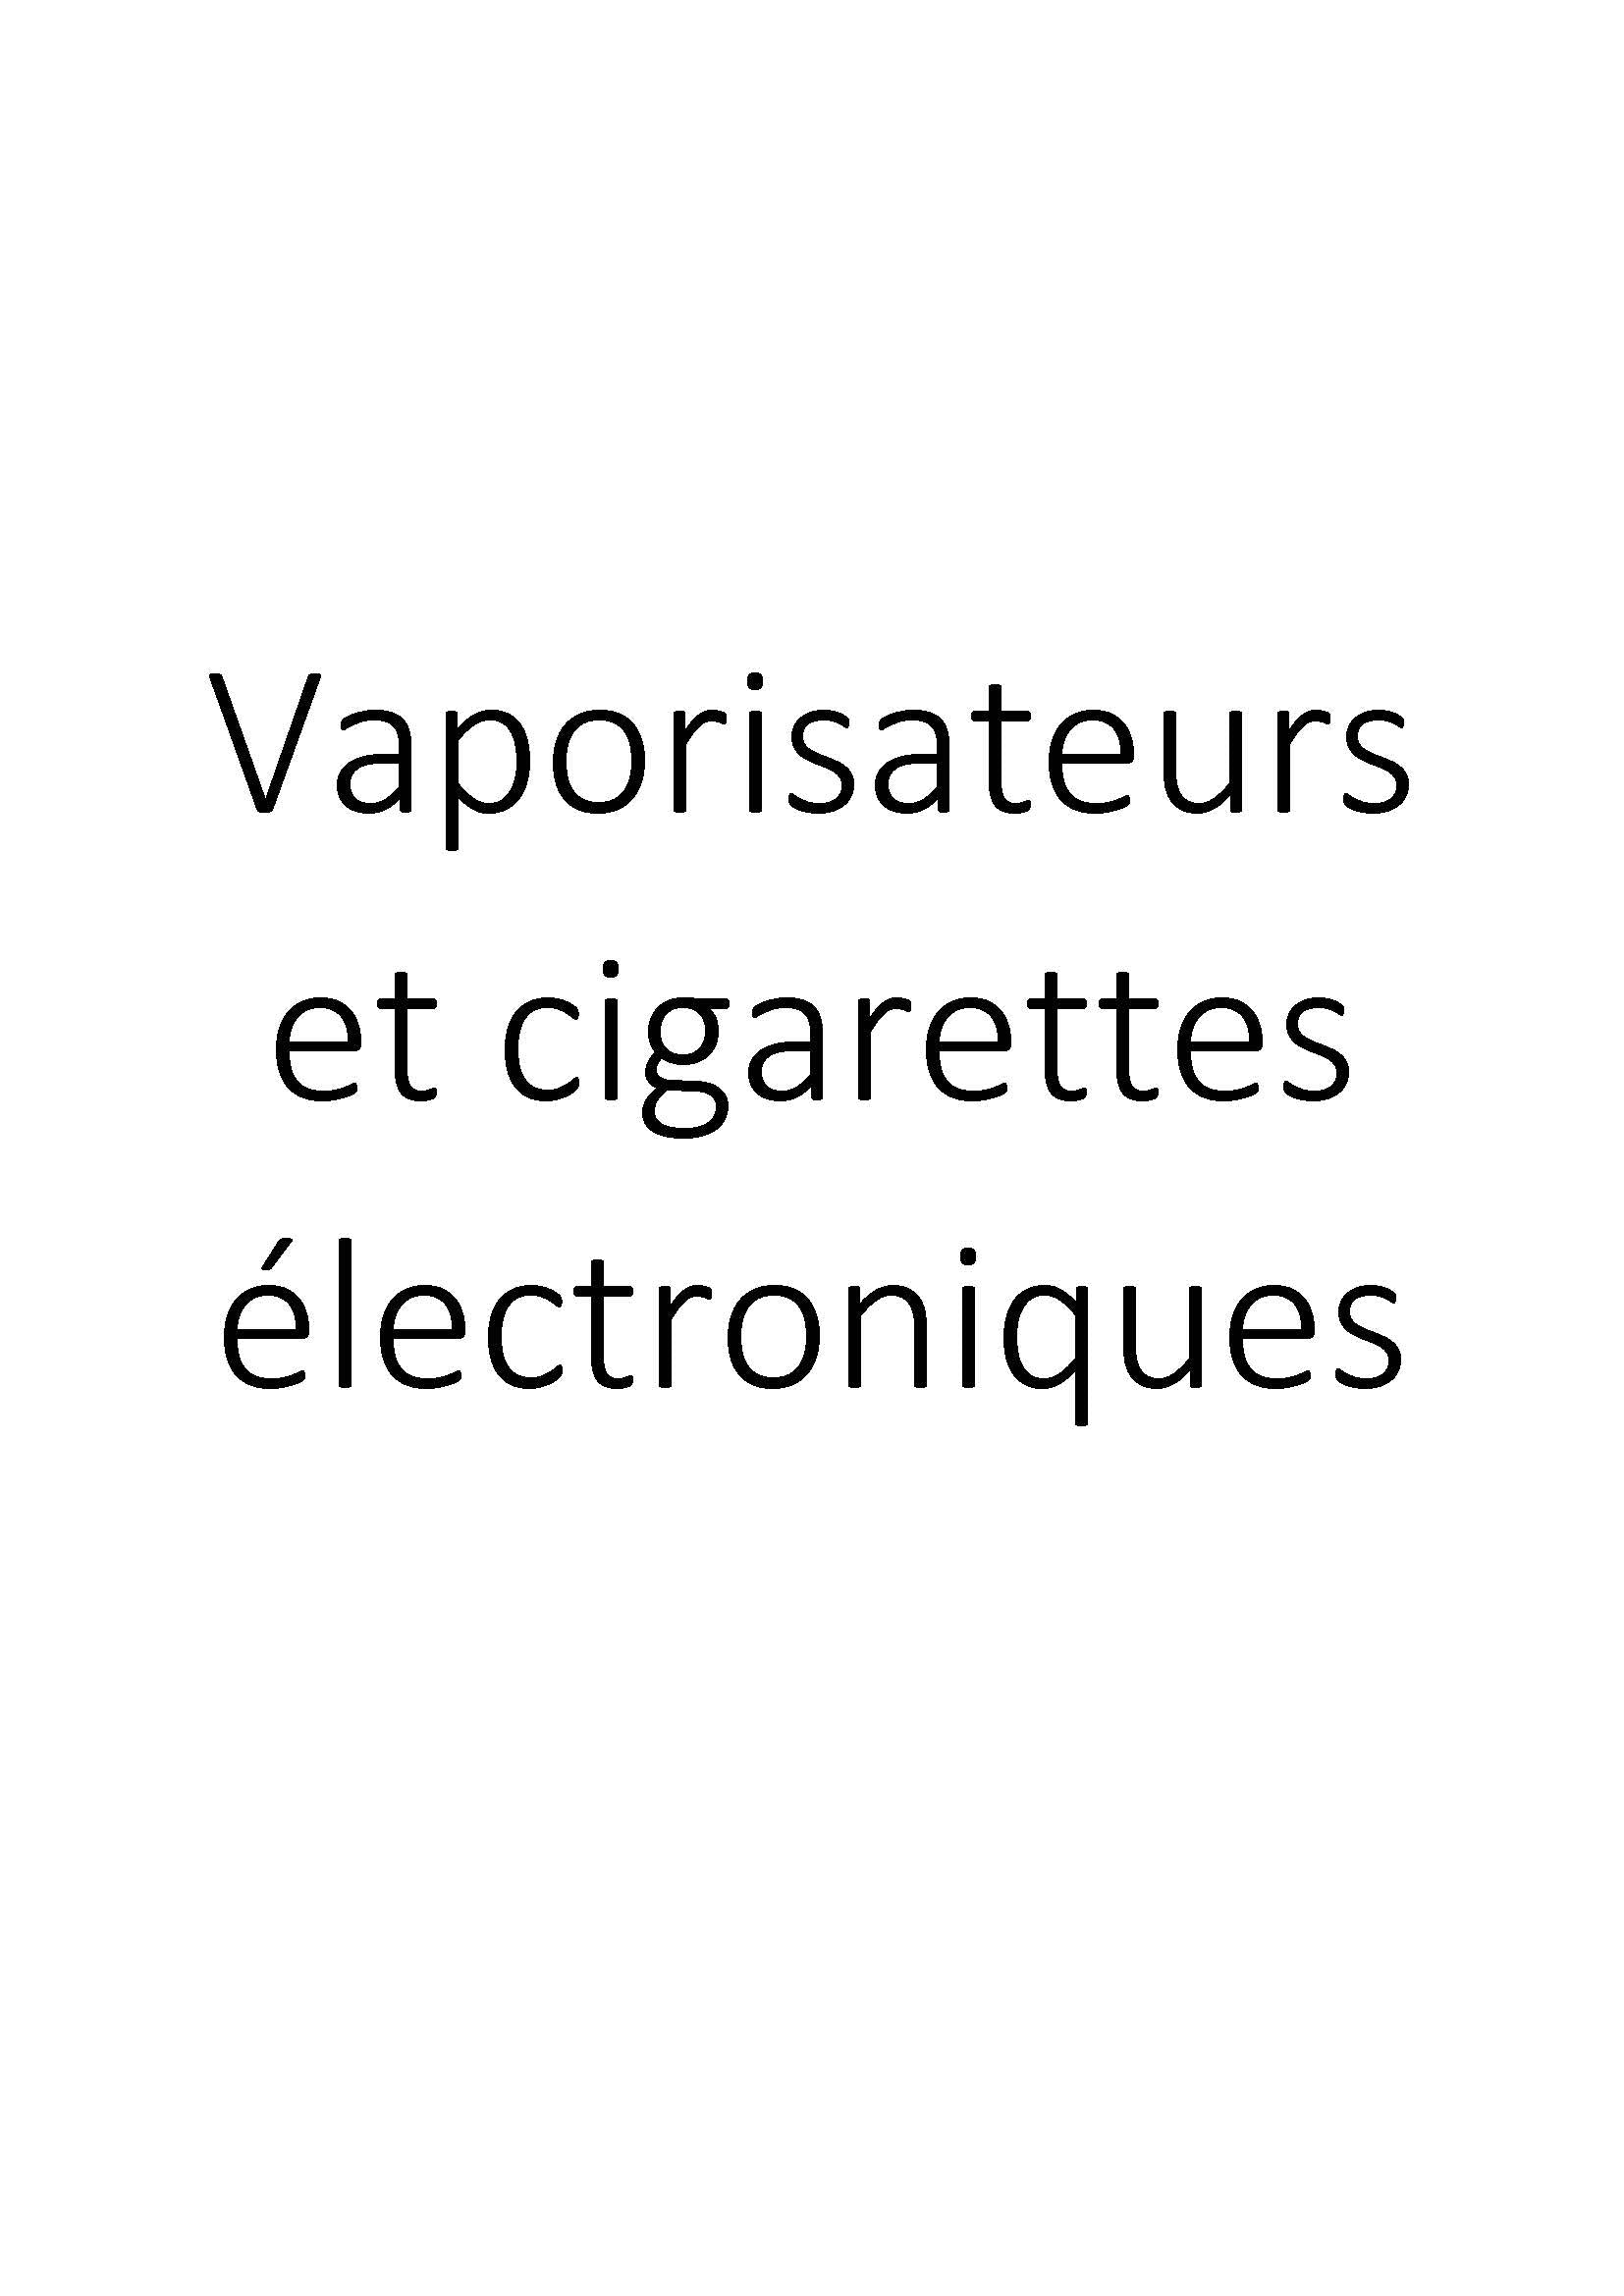 Vaporisateurs et cigarettes électroniques